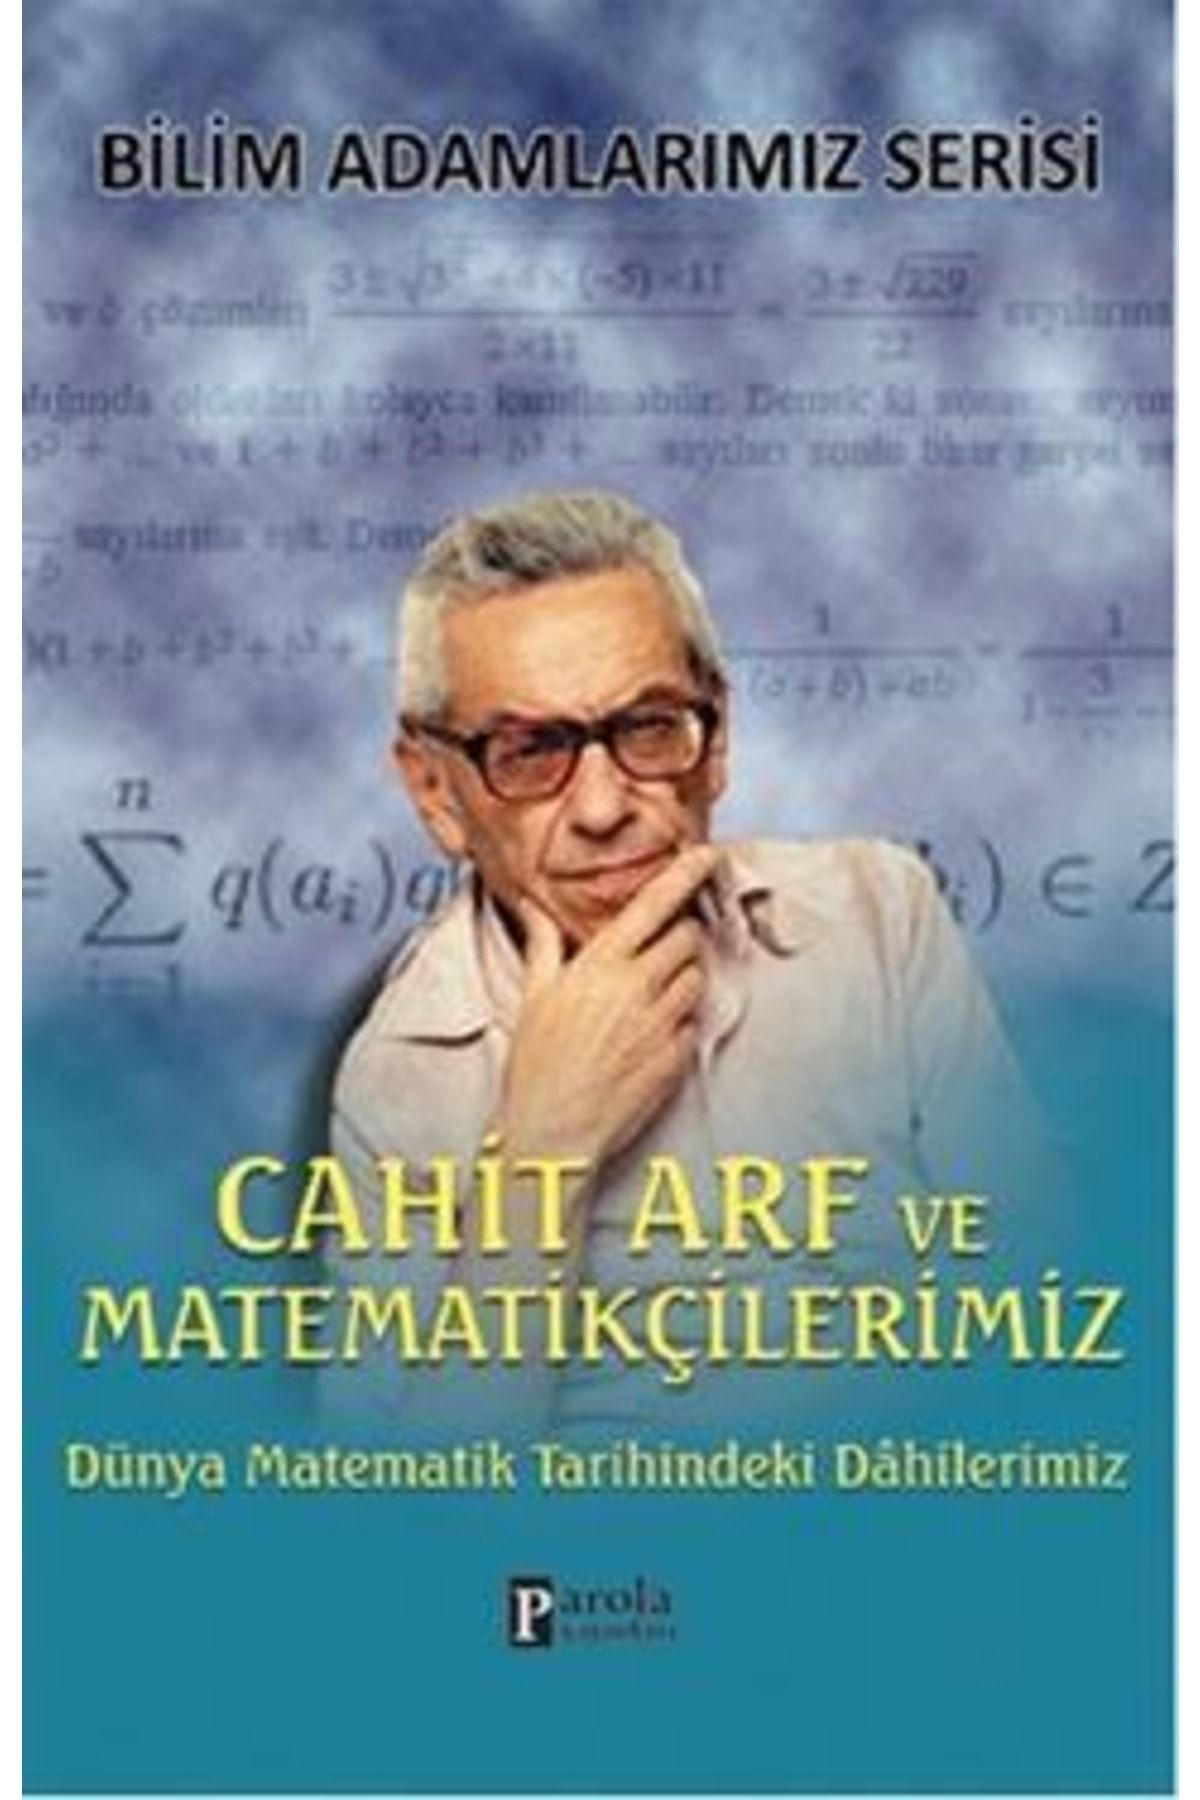 Parola Yayınları Cahit Arf Ve Matematikçilerimiz - - Ali Kuzu Kitabı